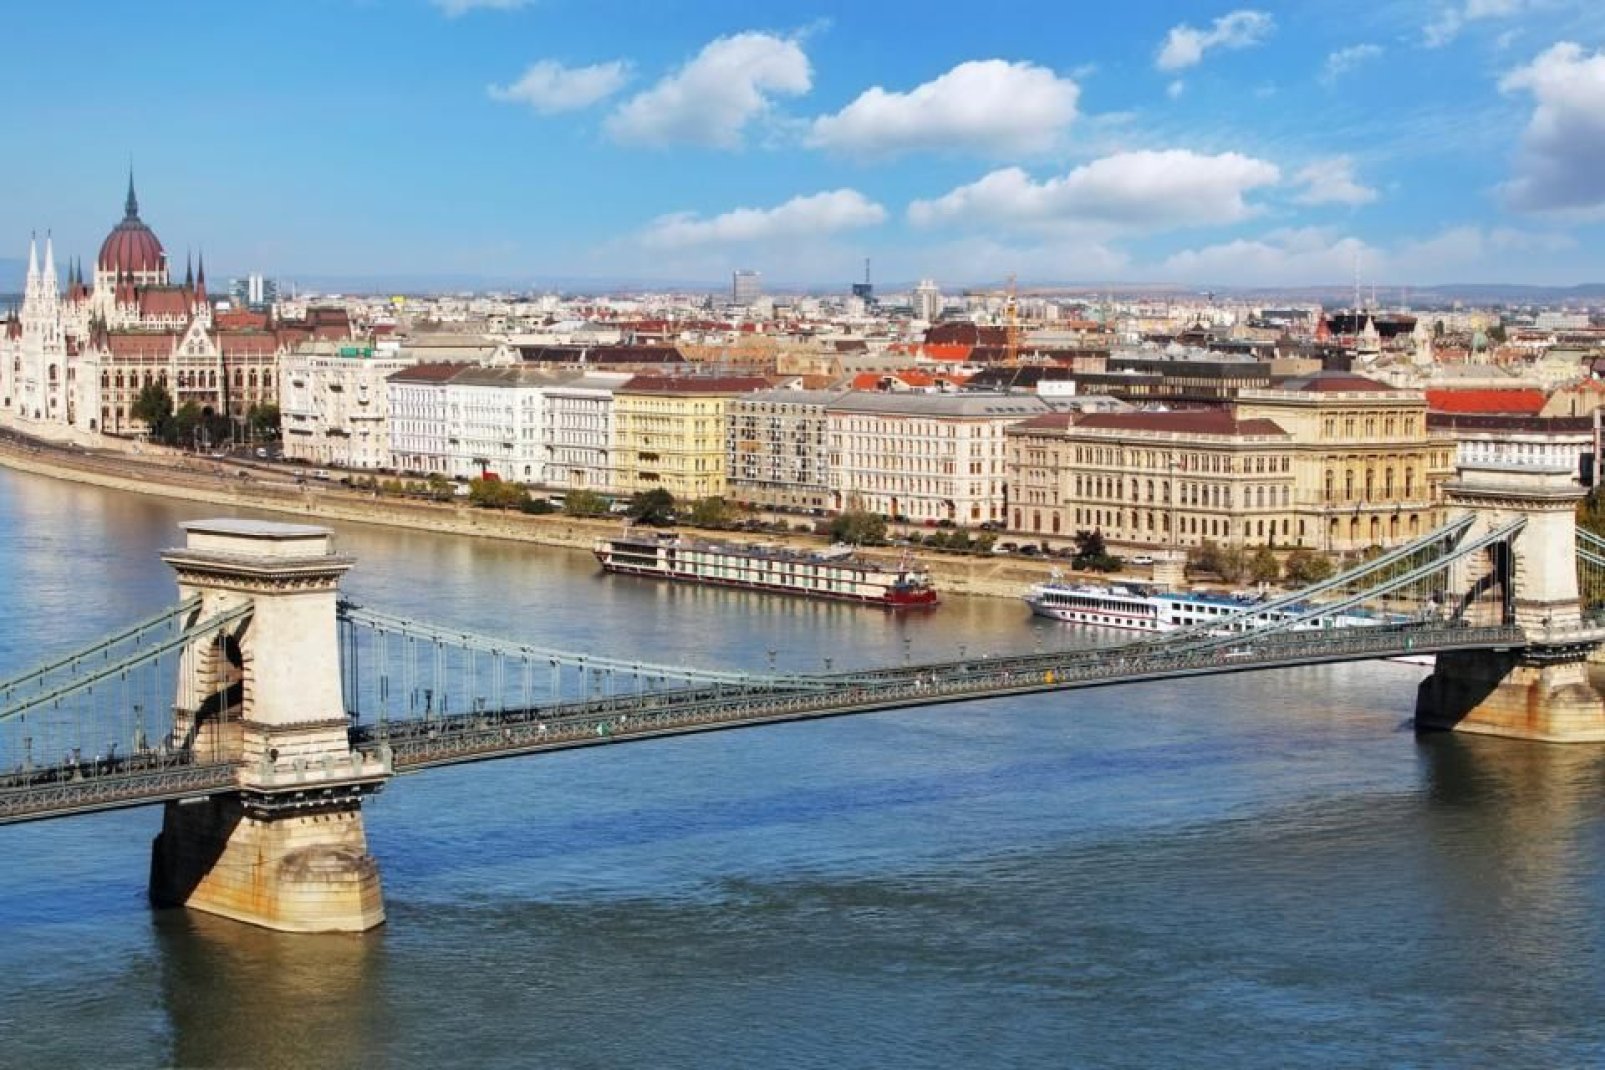 Il Ponte delle Catene, lo Széchenyi Lánchíd, venne inaugurato nel 1873 a sancire l'unione dei villaggi di Buda e Pest.